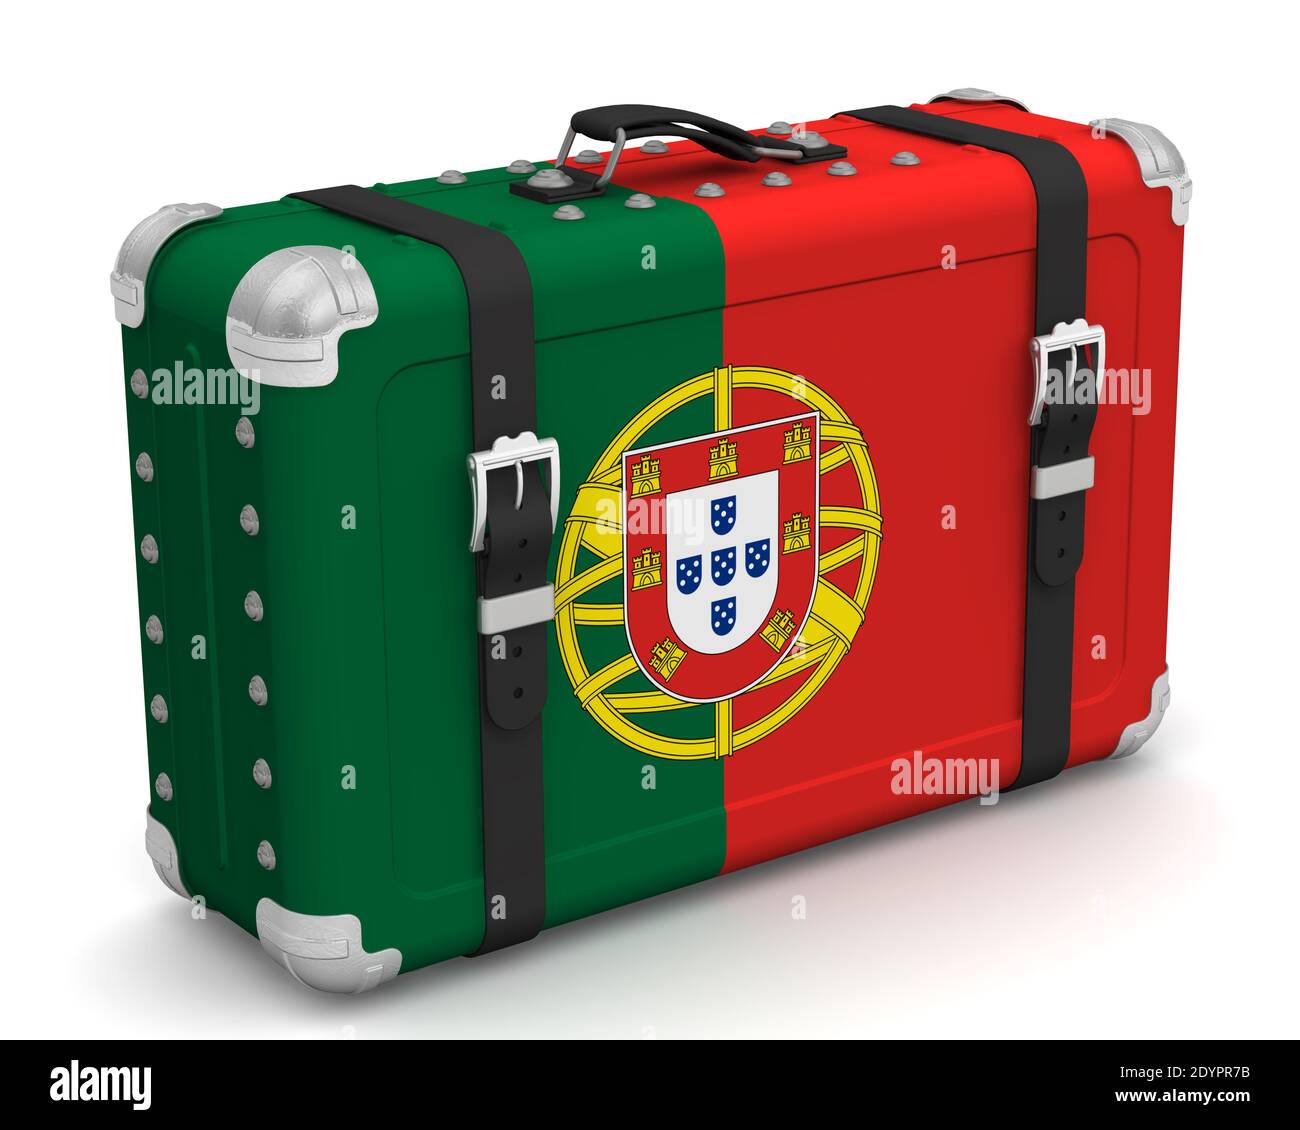 Valise élégante avec drapeau national du Portugal. Valise rétro avec le drapeau national de la République portugaise se trouve sur une surface blanche Banque D'Images